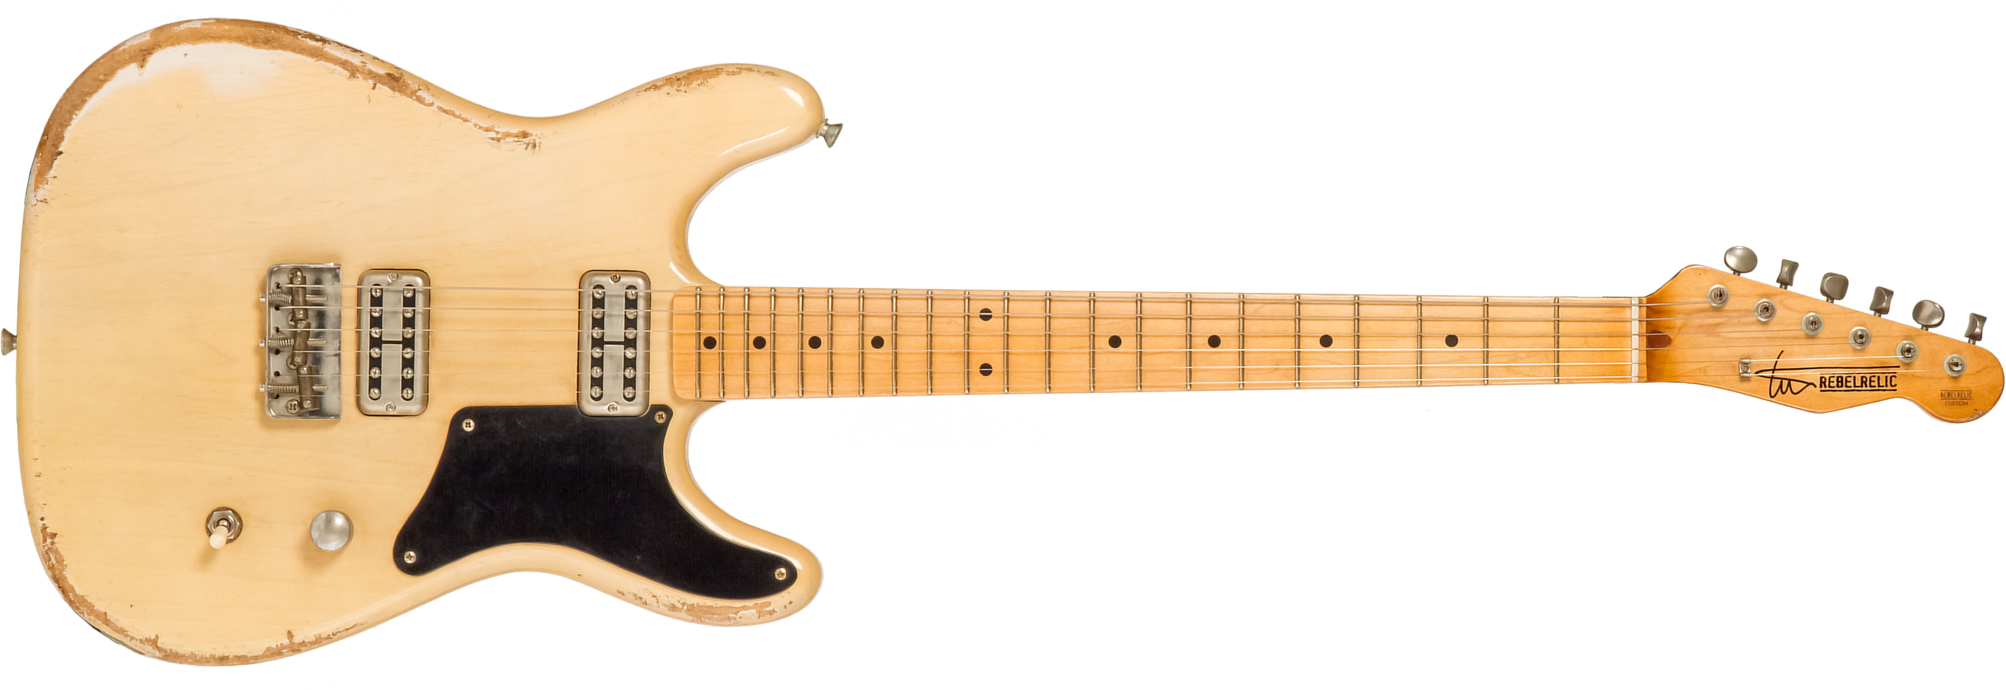 Rebelrelic Tux Monarch 2h Ht Rw #62081 - Transparent Eden Yellow - Elektrische gitaar in Str-vorm - Main picture